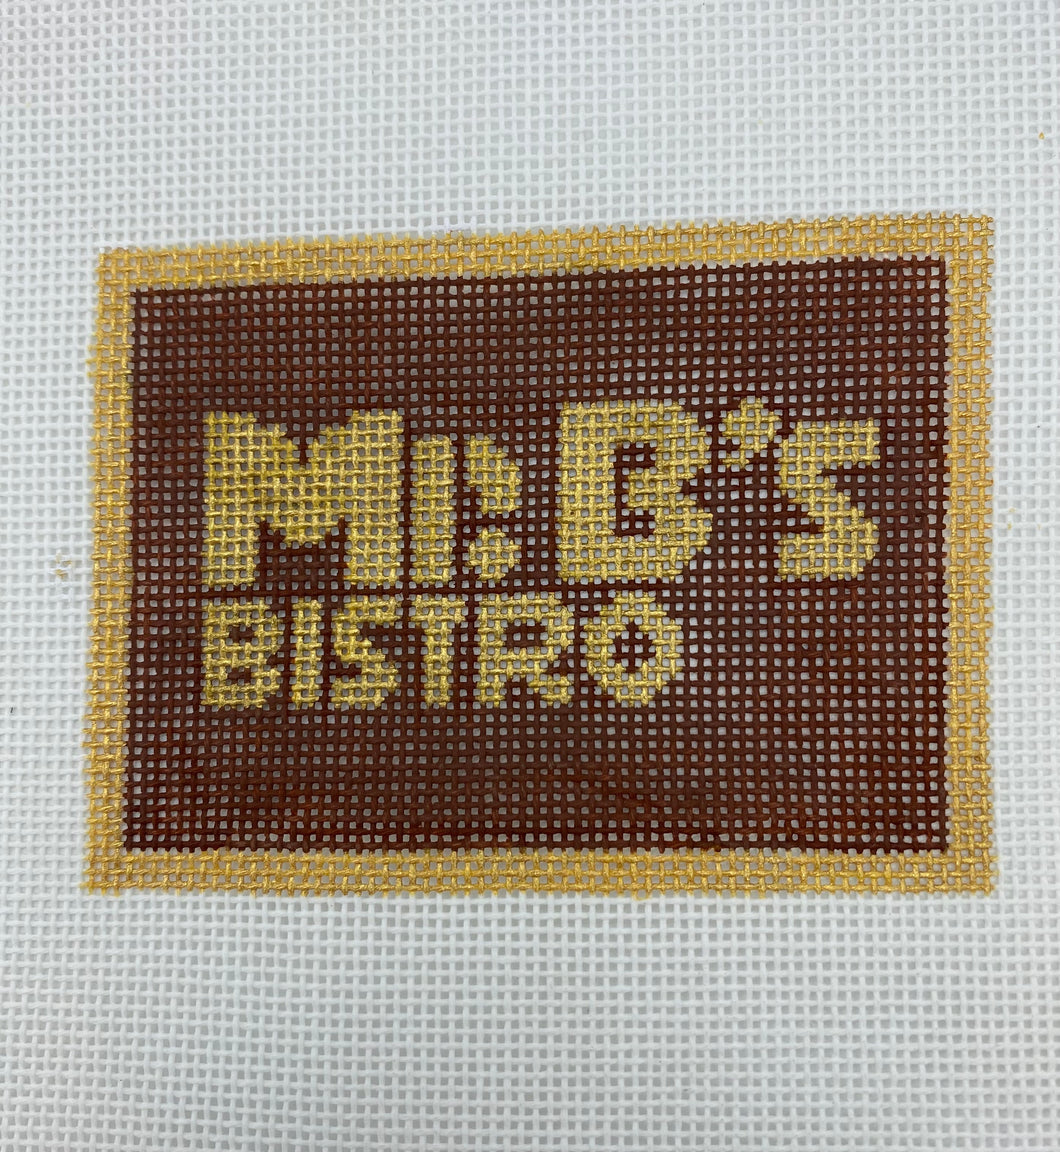 Mr. B's Restaurant